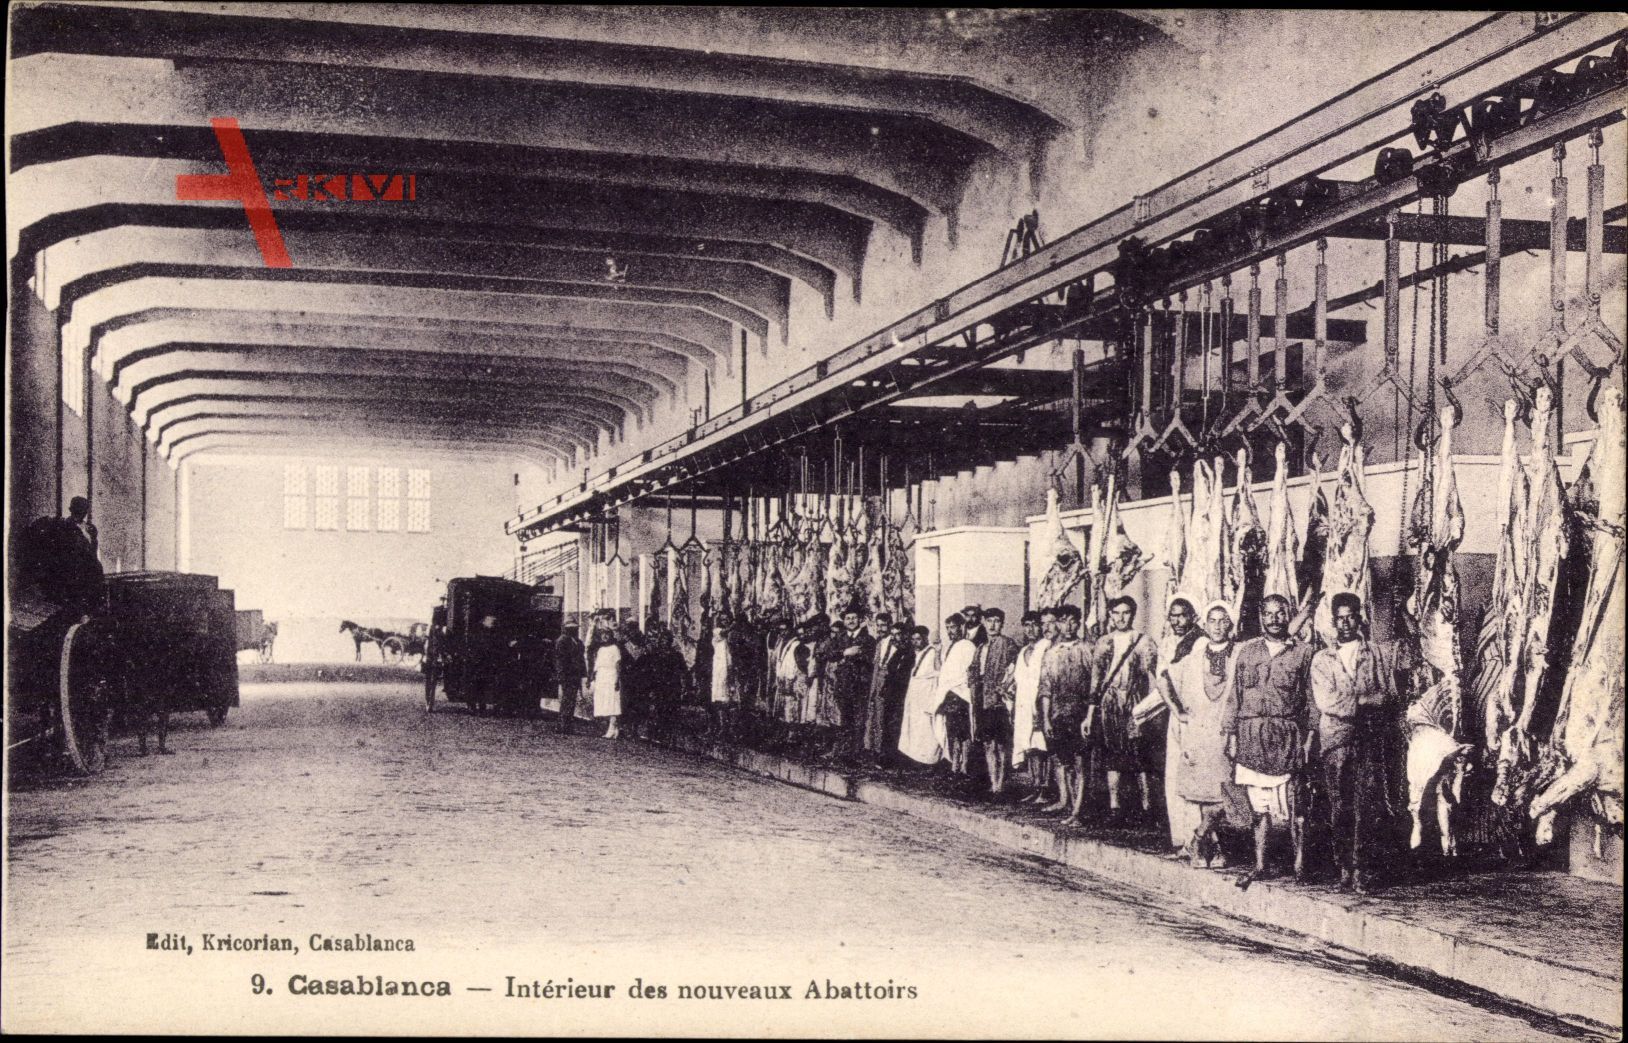 Casablanca Marokko, Interieur des nouveaux Abbattoirs, Schlachthof